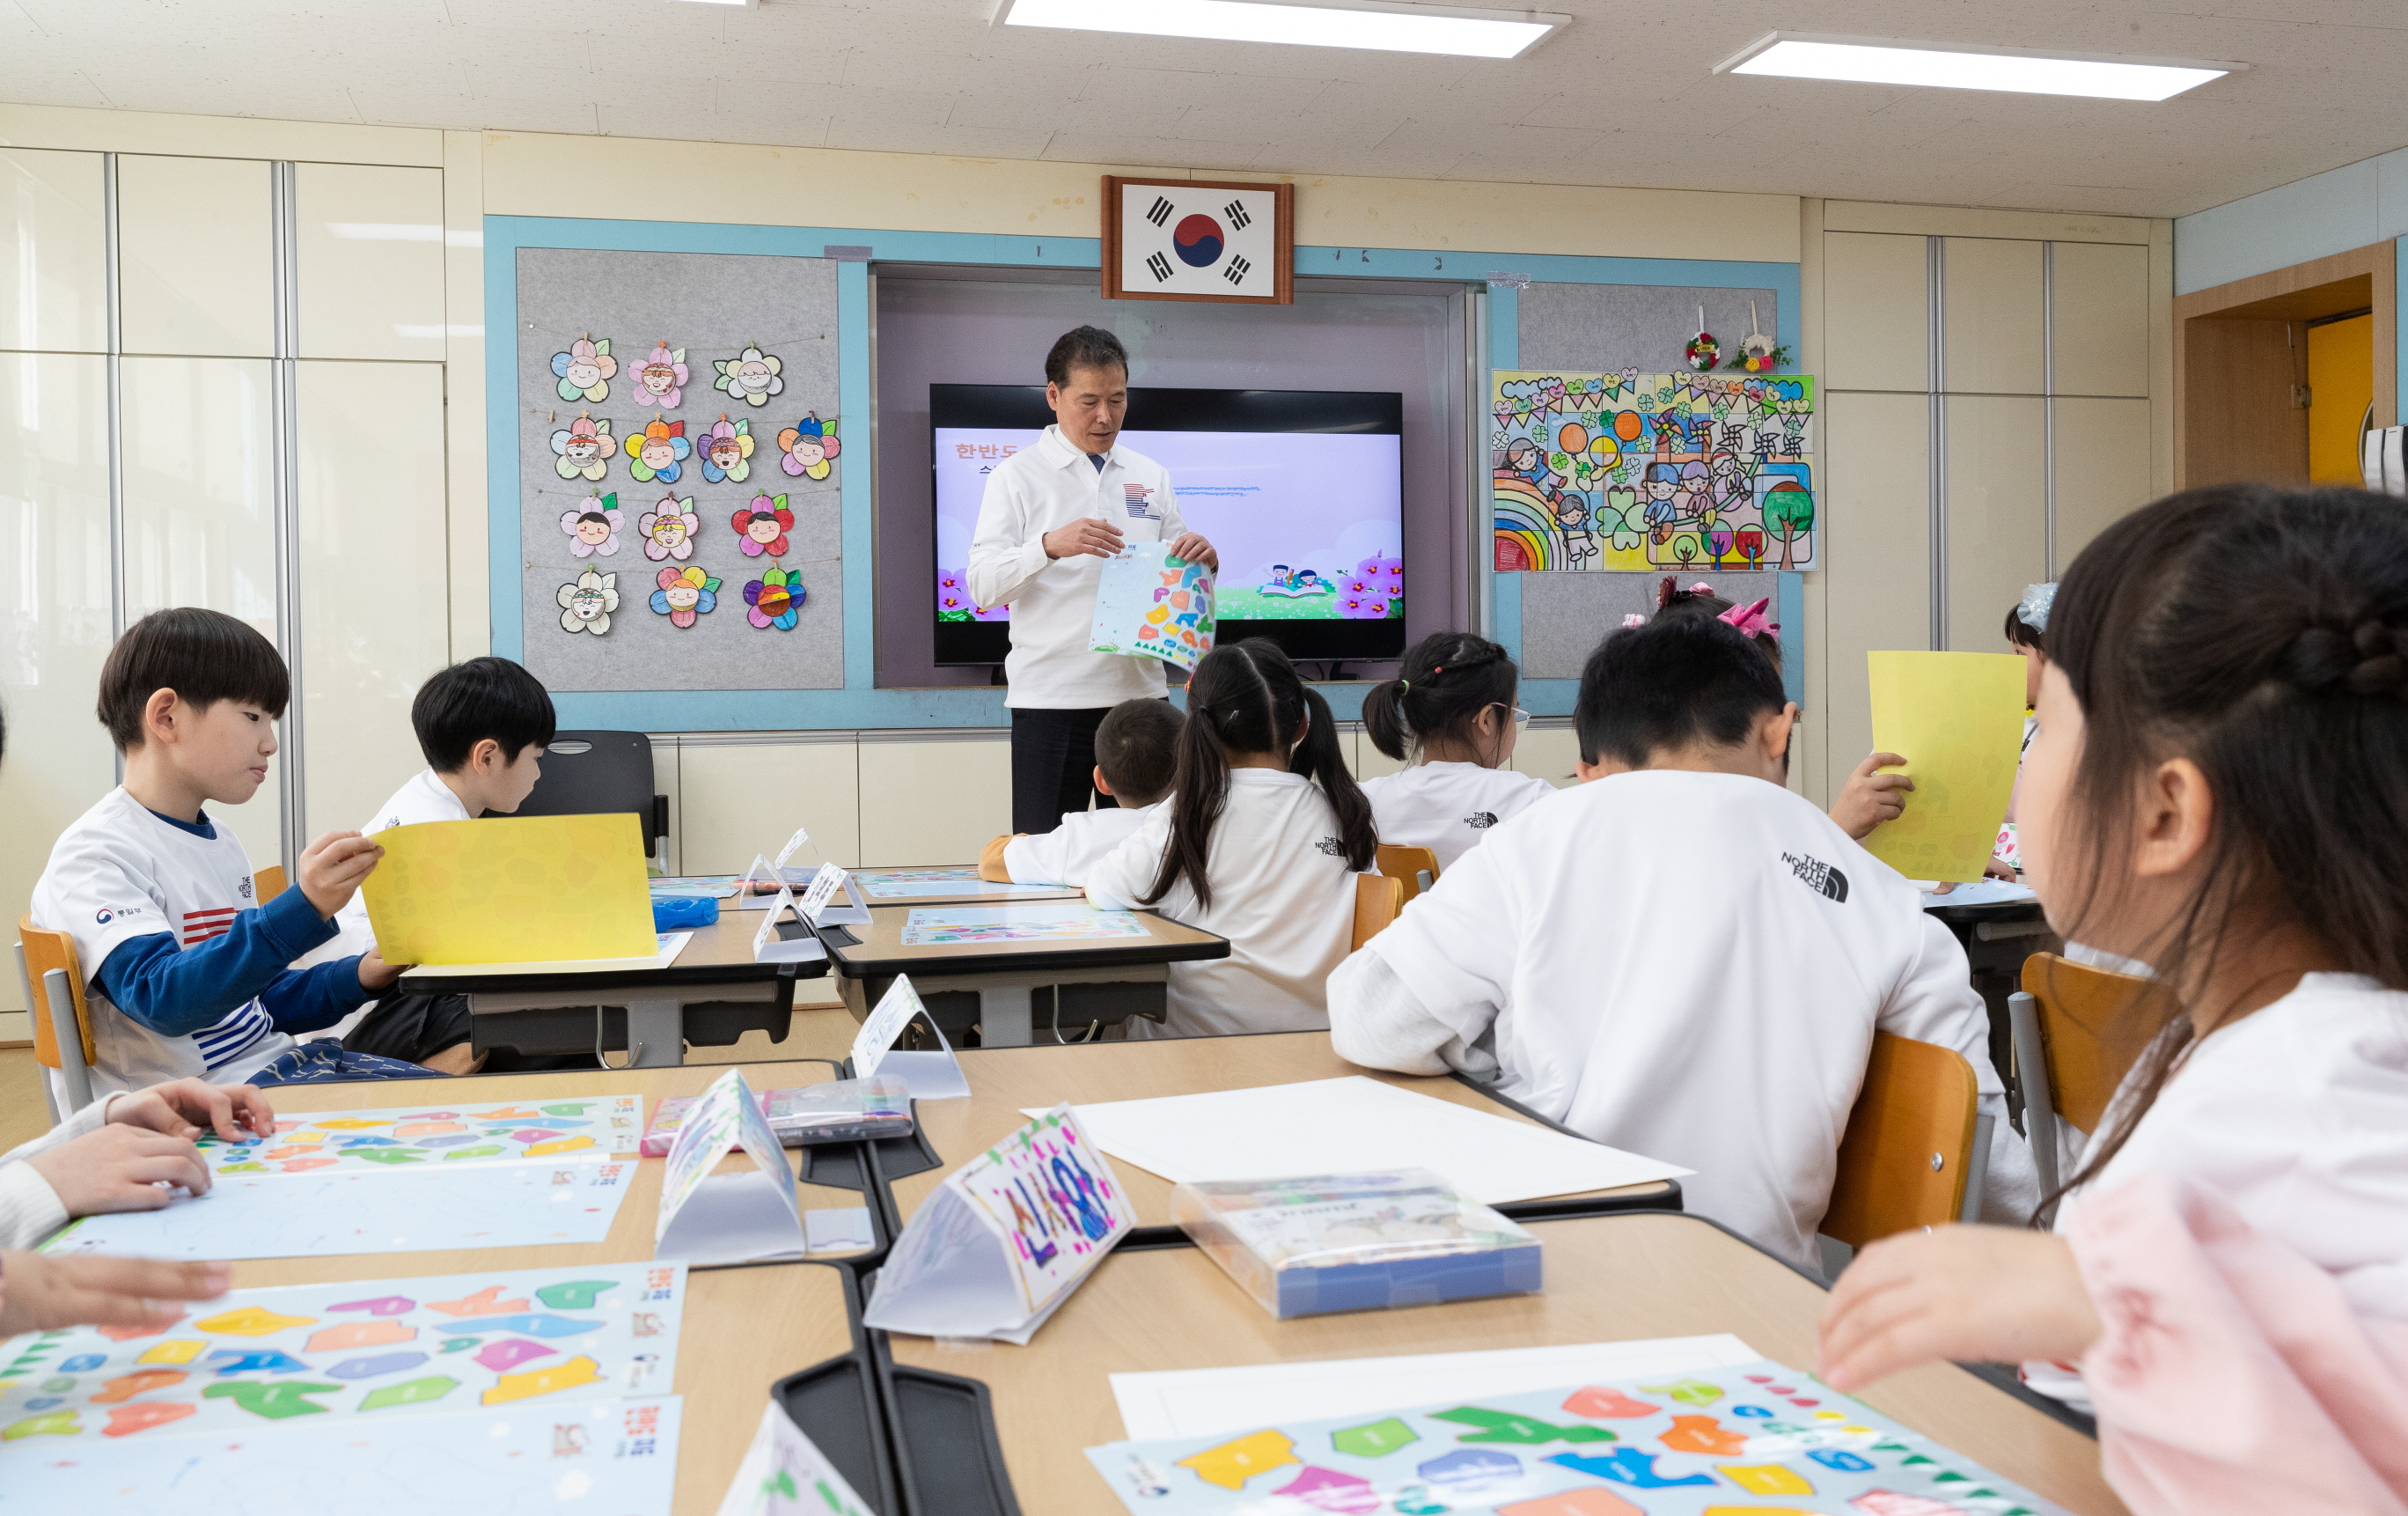 [24. 3. 26.] 통일부 김영호 장관 연천초등학교 방문 이미지 4 - 본문에 자세한설명을 제공합니다.